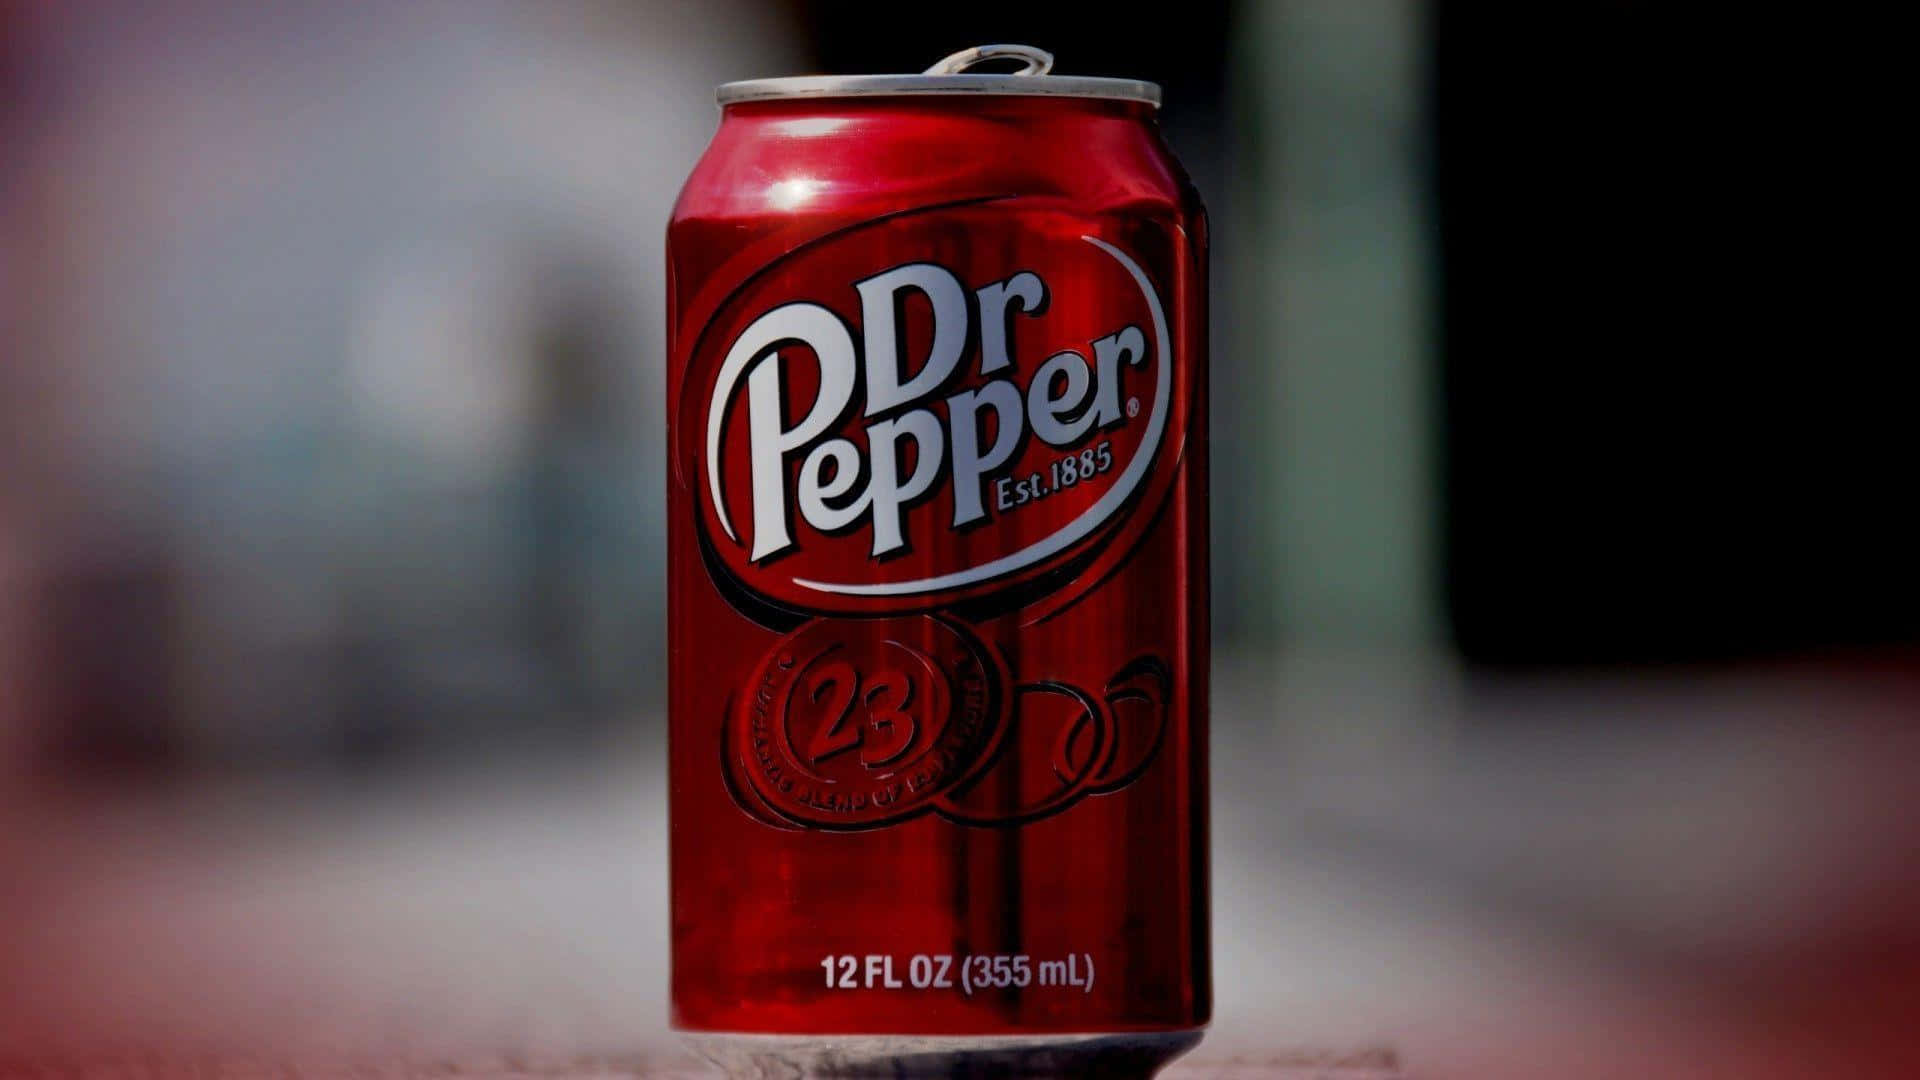 Dr Pepper's cola dåse på fortovet Wallpaper